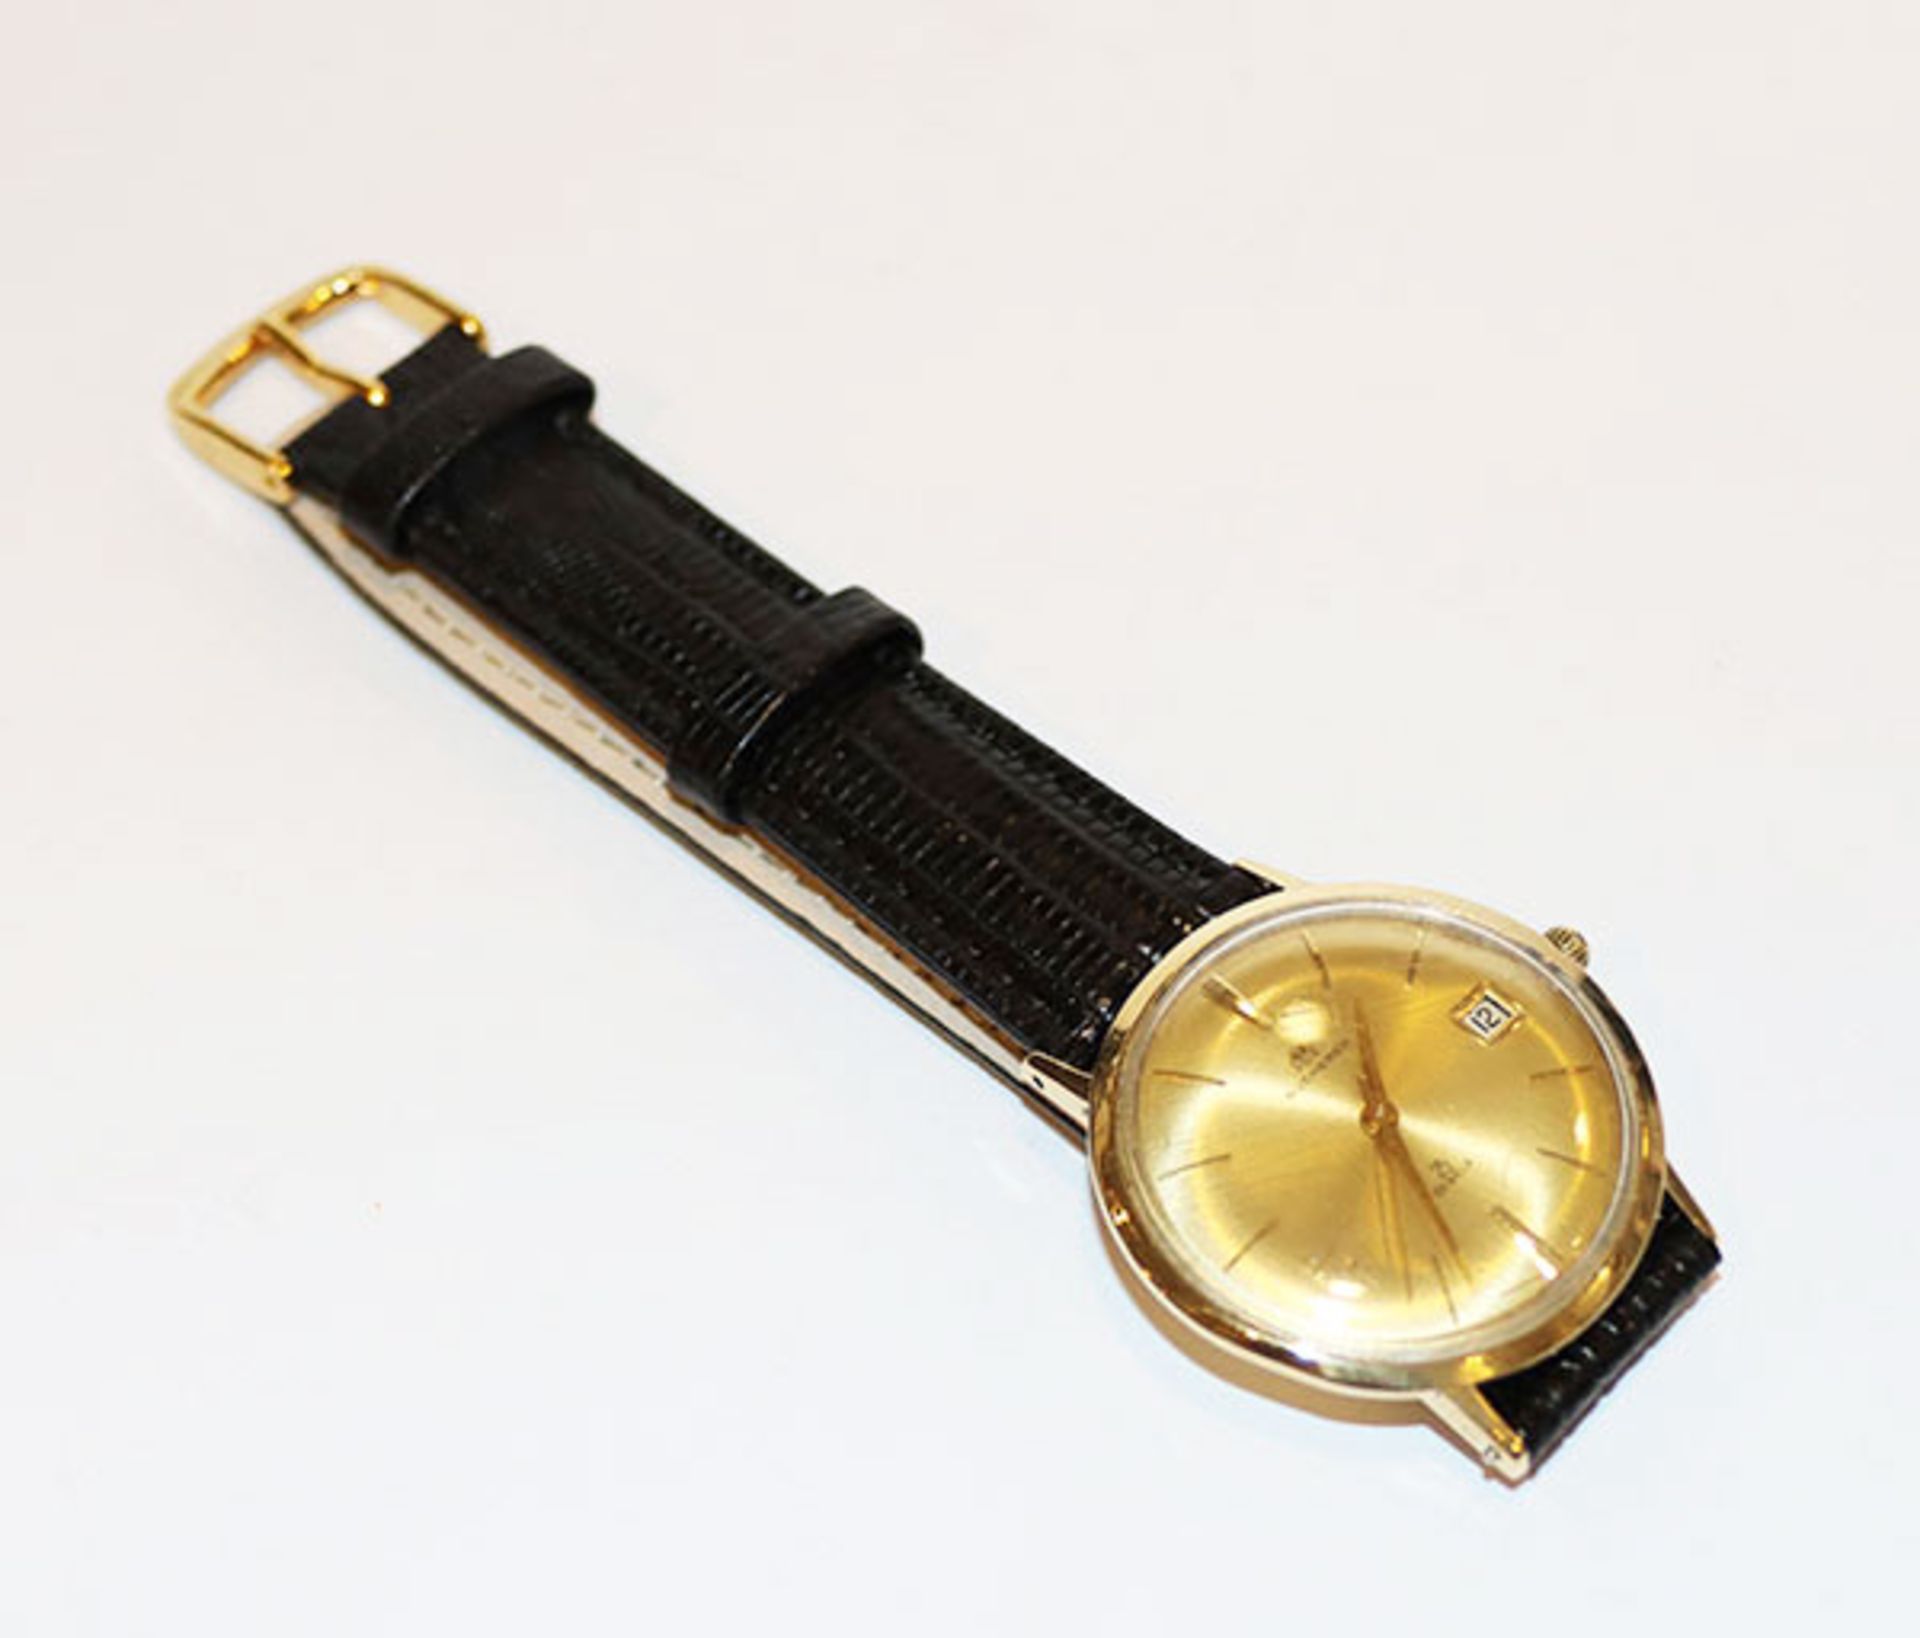 18 k Gelbgold Bucherer Herren Armbanduhr, automatik mit Datumsanzeige, intakt, an neuem